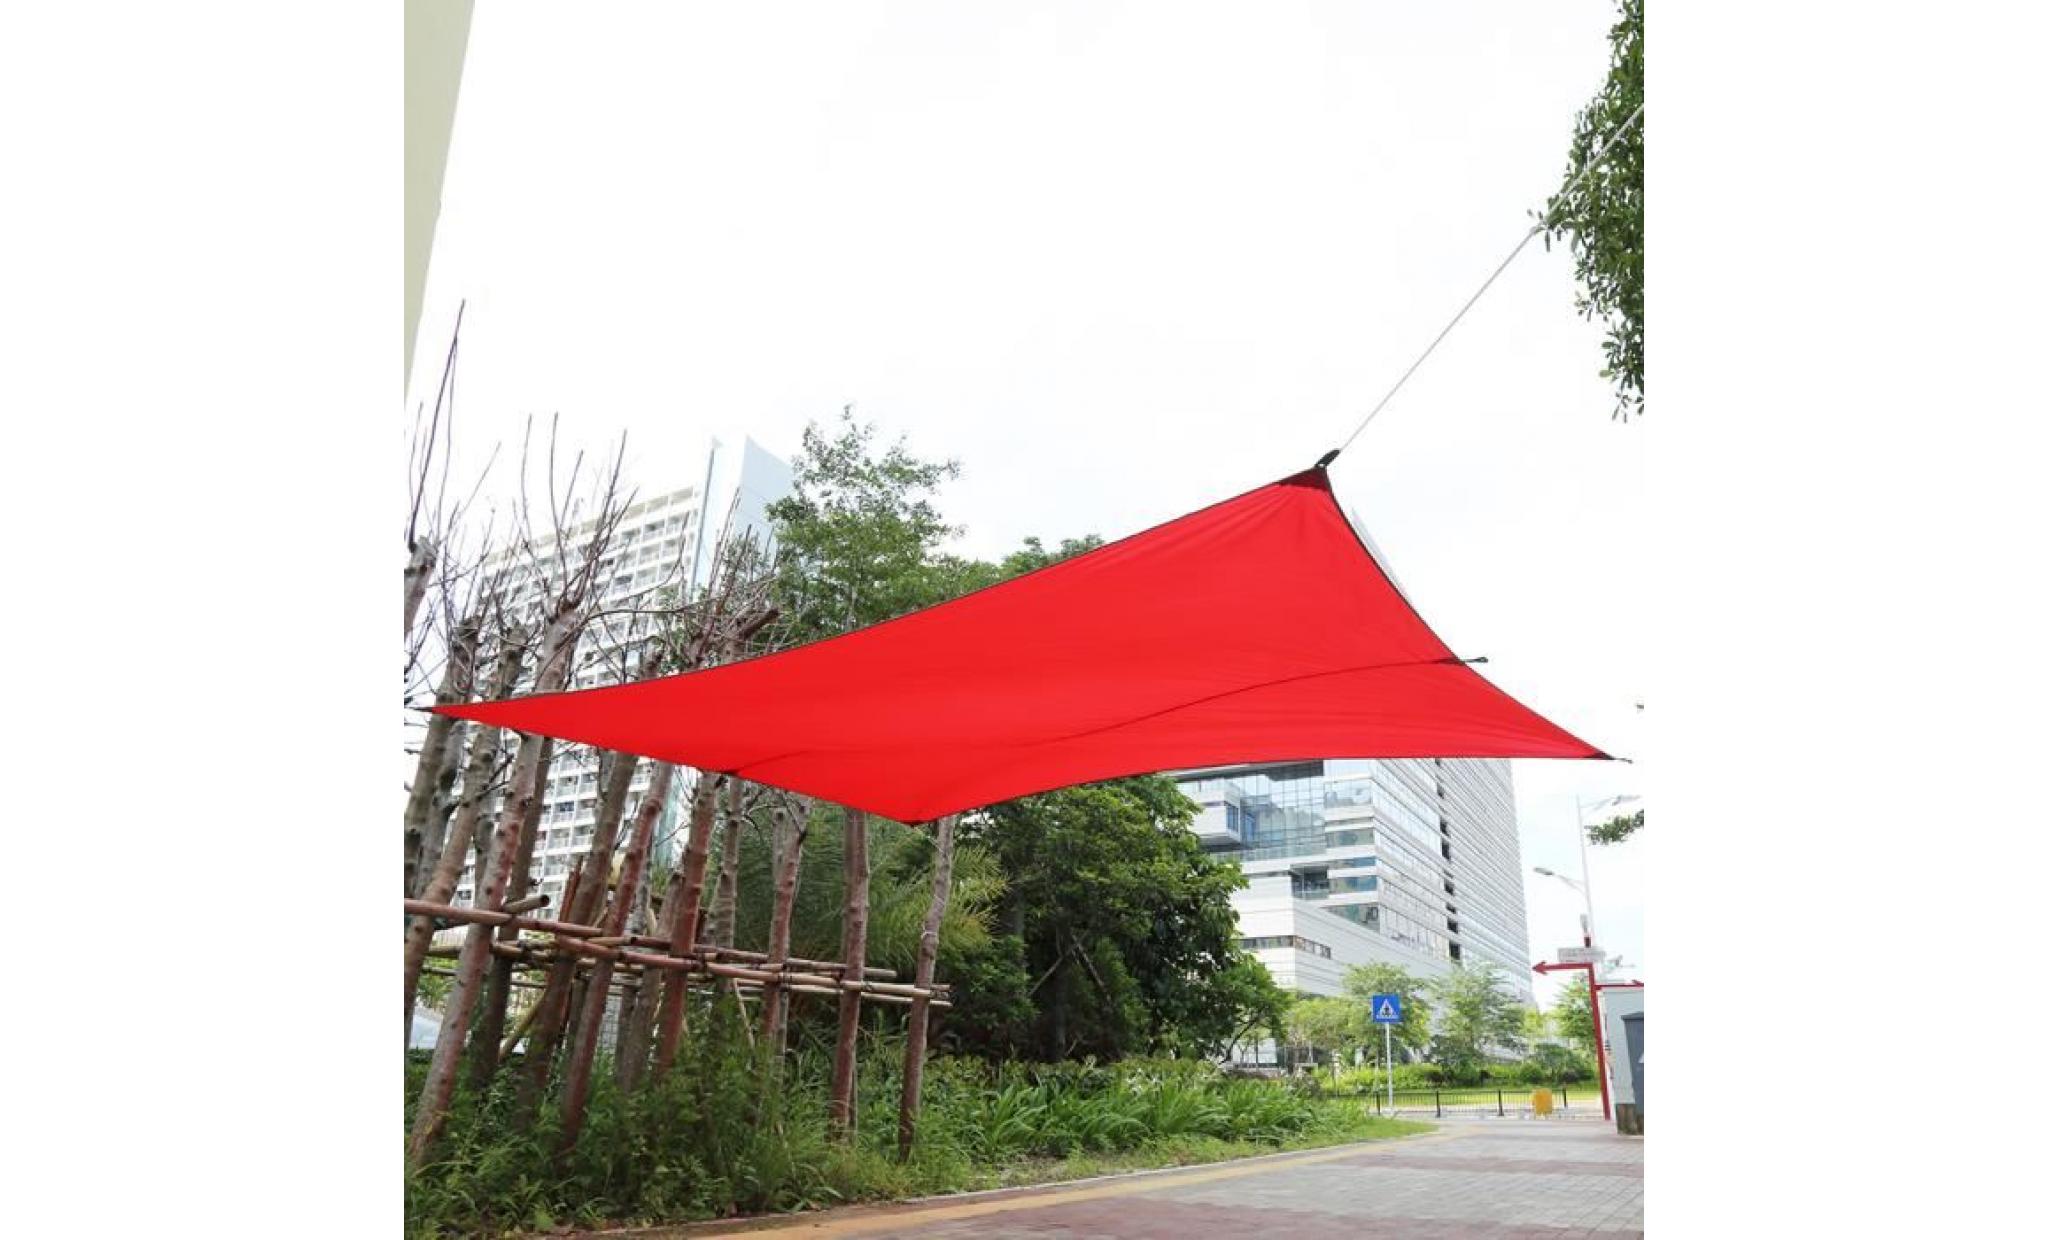 voile d'ombrage toile d'ombrage   3m*4m rouge   rectangulaire polyester auvent pour extérieur jardin patio